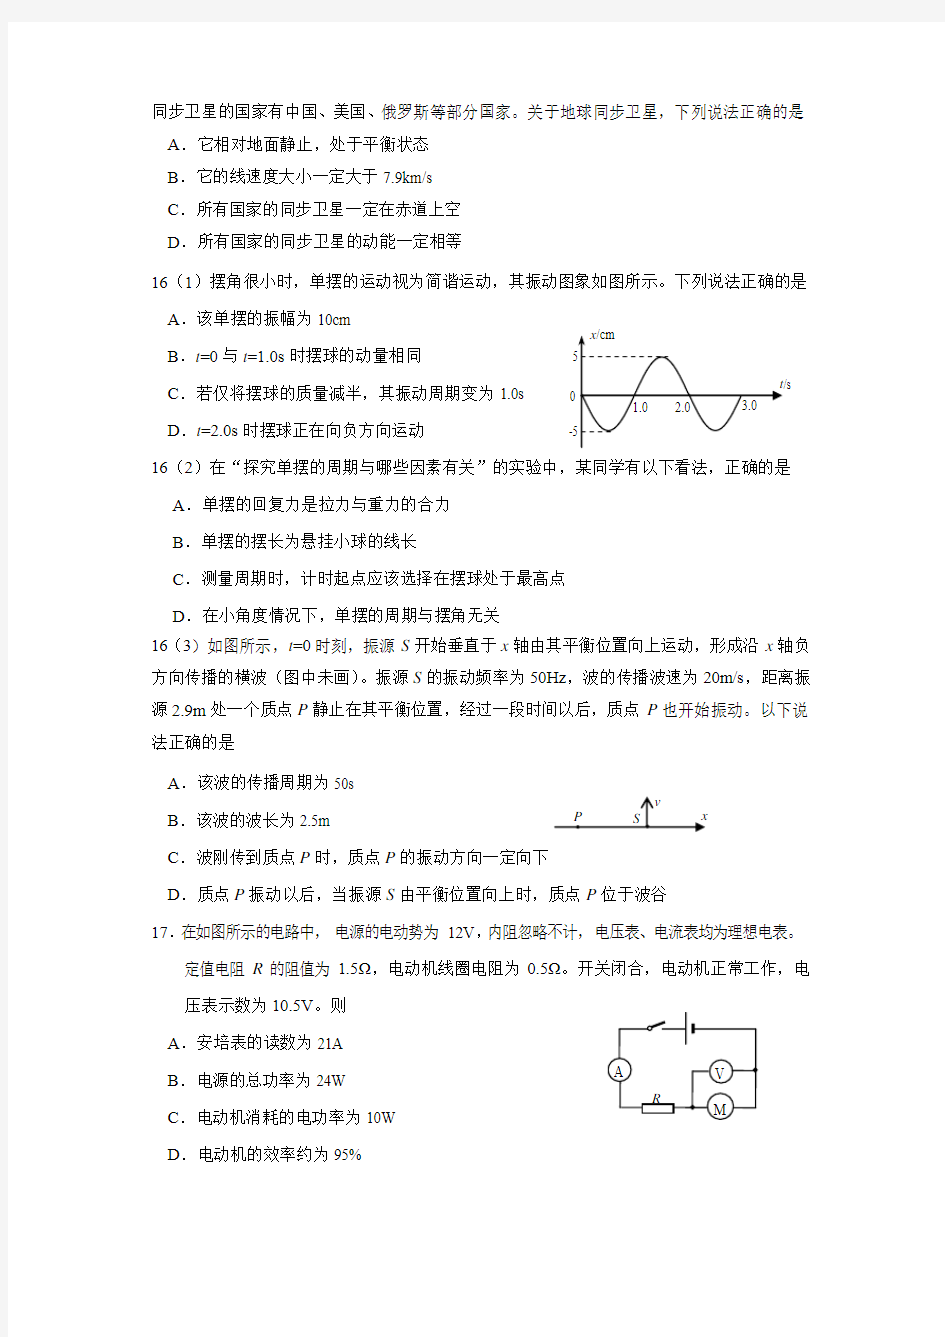 2019年北京朝阳区高三物理考前保温练习(二)试题及答案